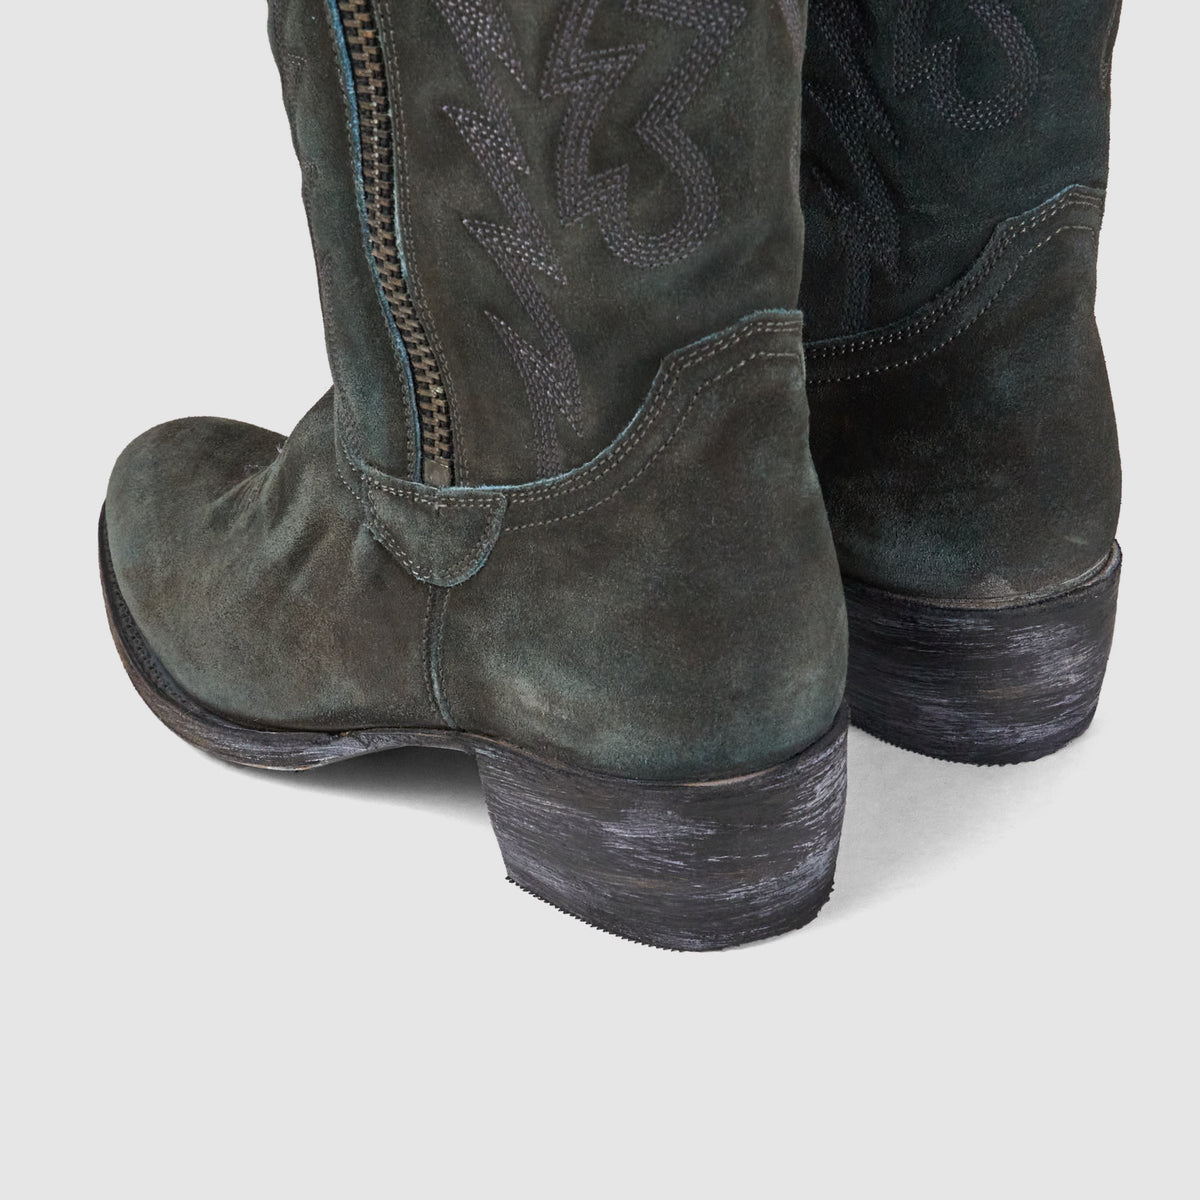 Sendra Ladies Western Boot